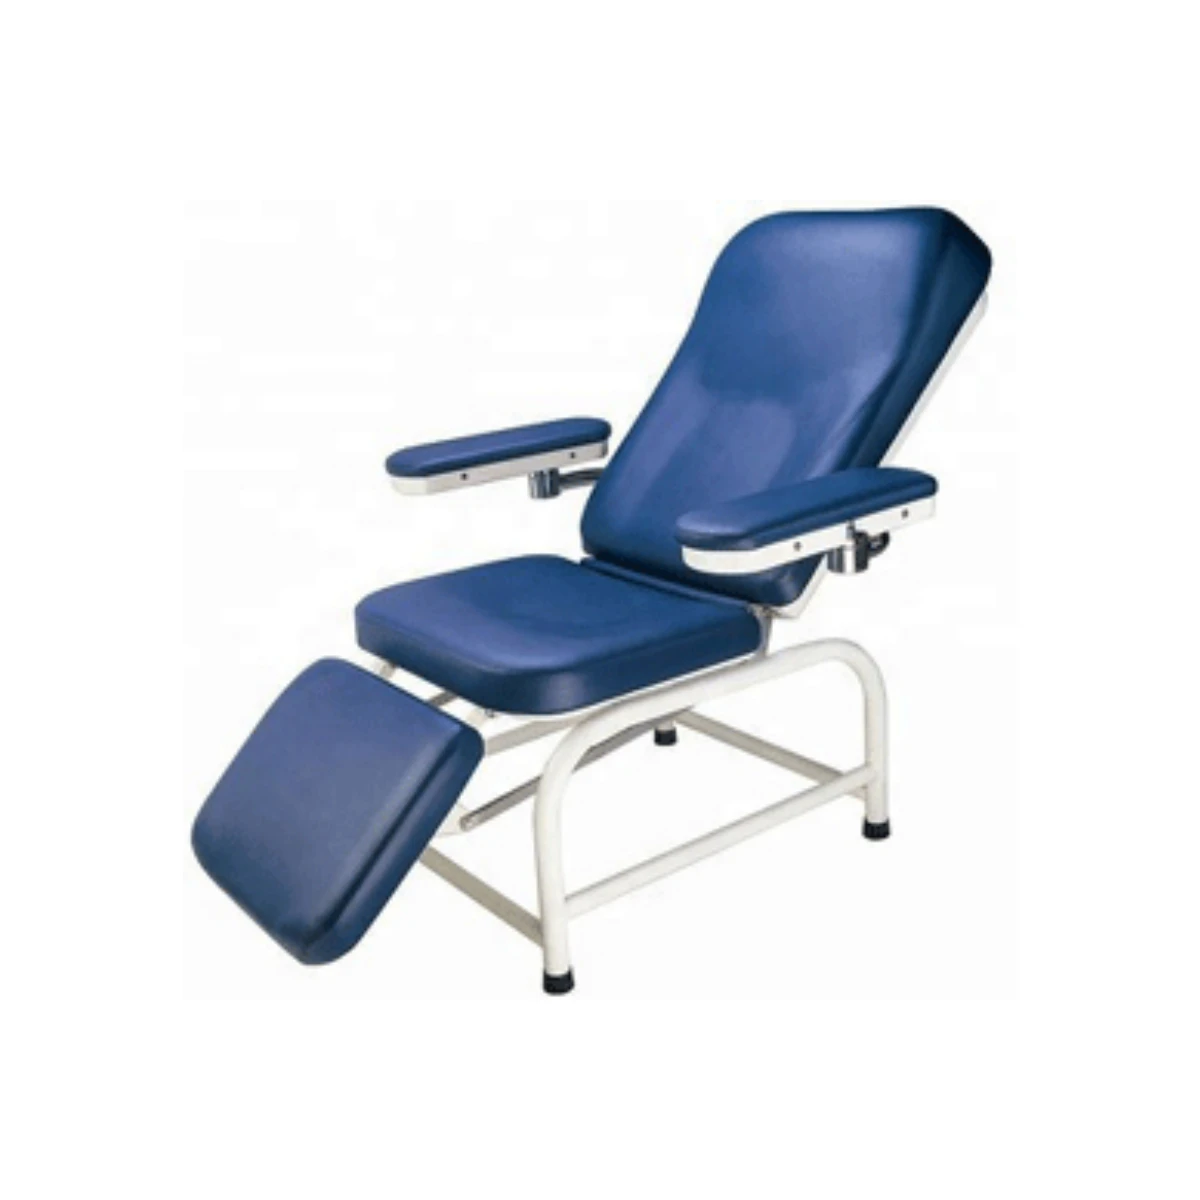 Кресло для забора крови модели Flexi 3k